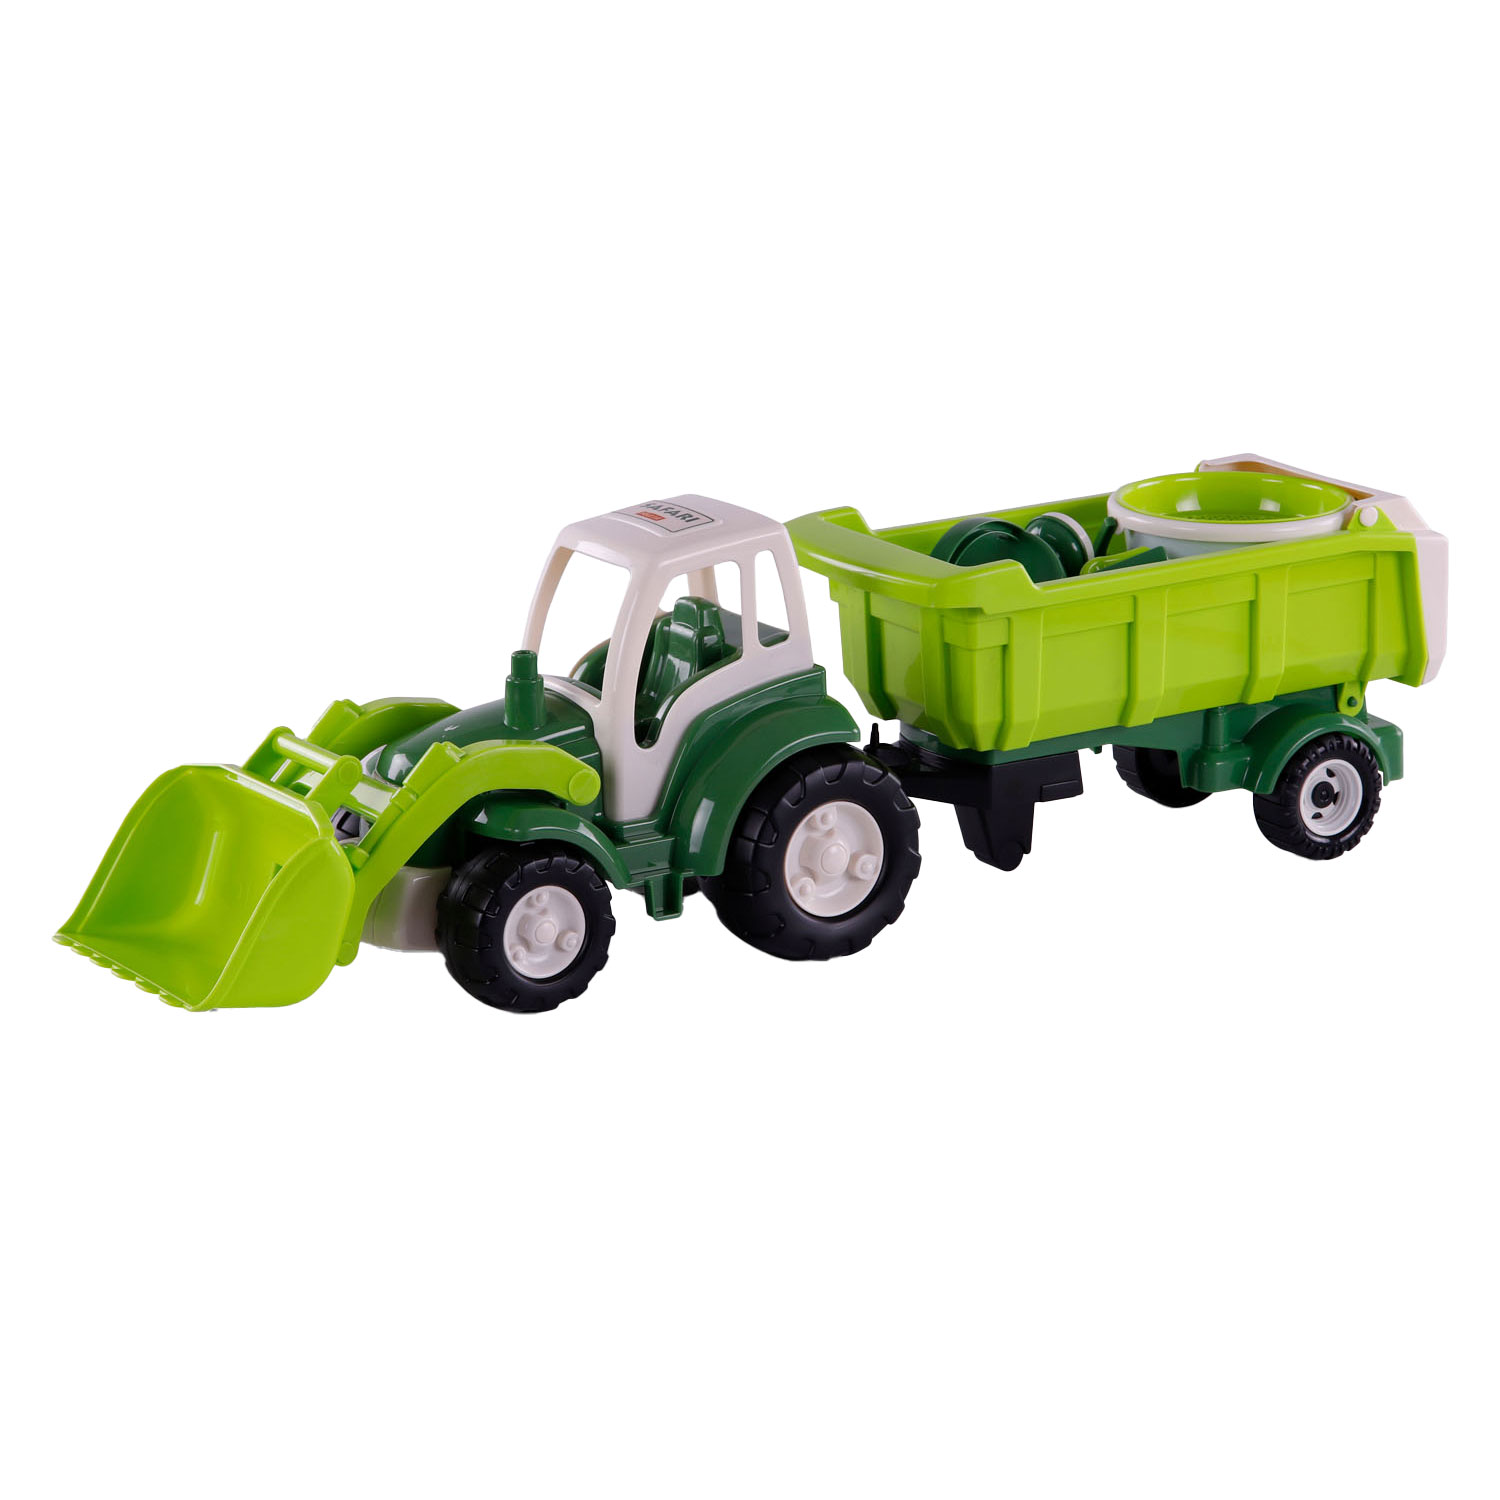 Cavallino XL Tractor Groen met Kiep- Aanhangwagen en Emmerset, 9dlg.